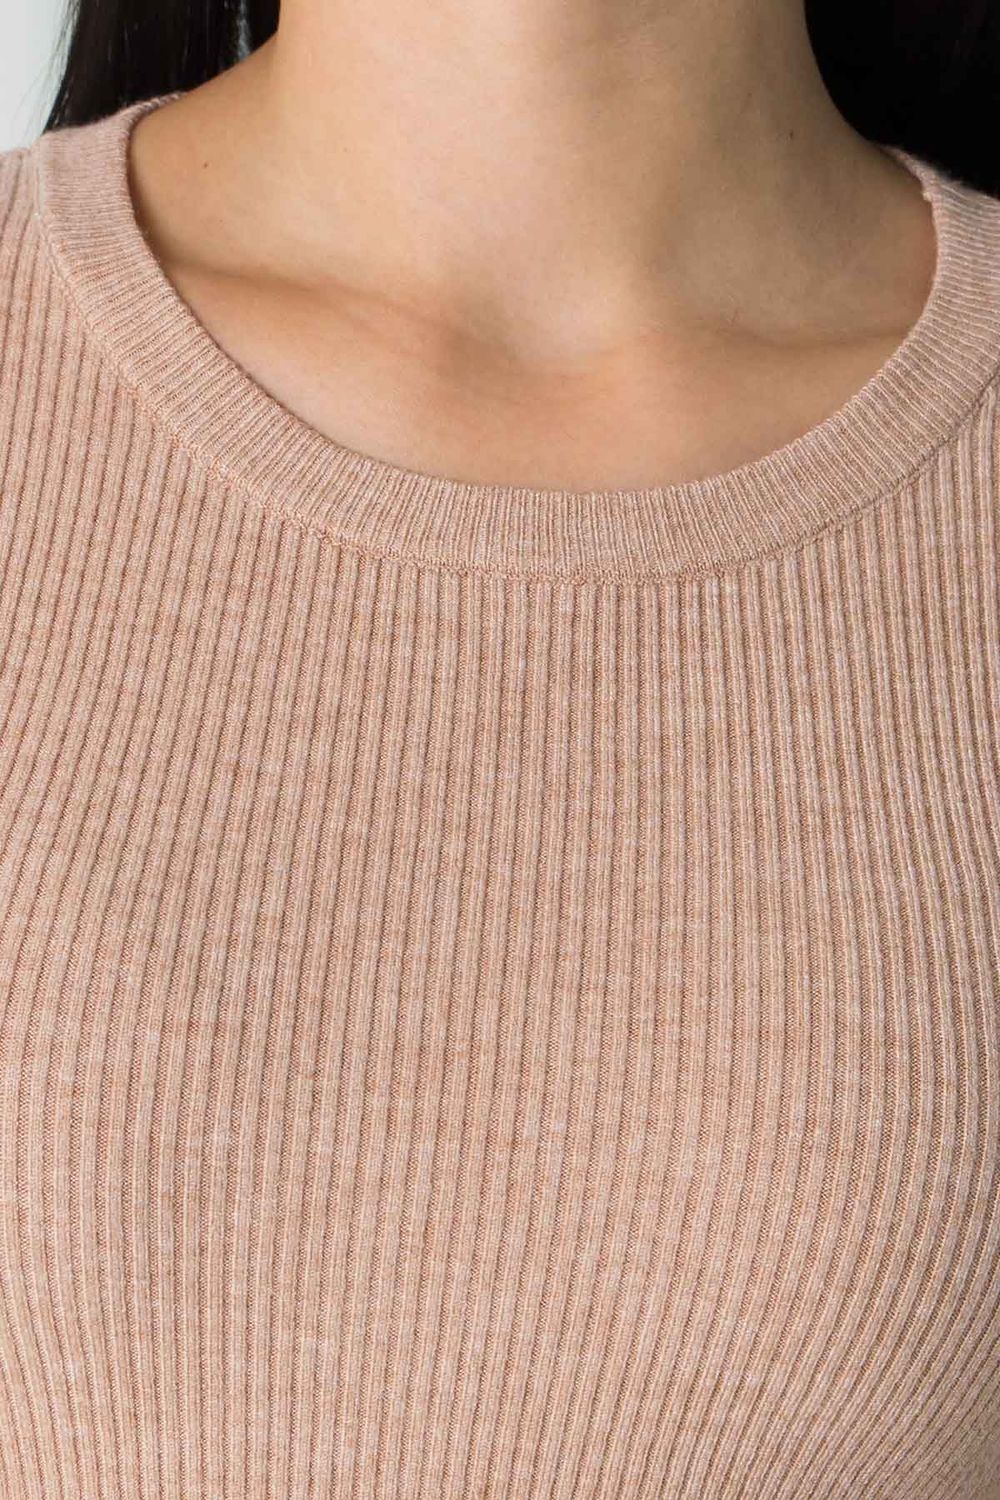 Жіноча базова кофточка джемпер бежевого кольору - фото